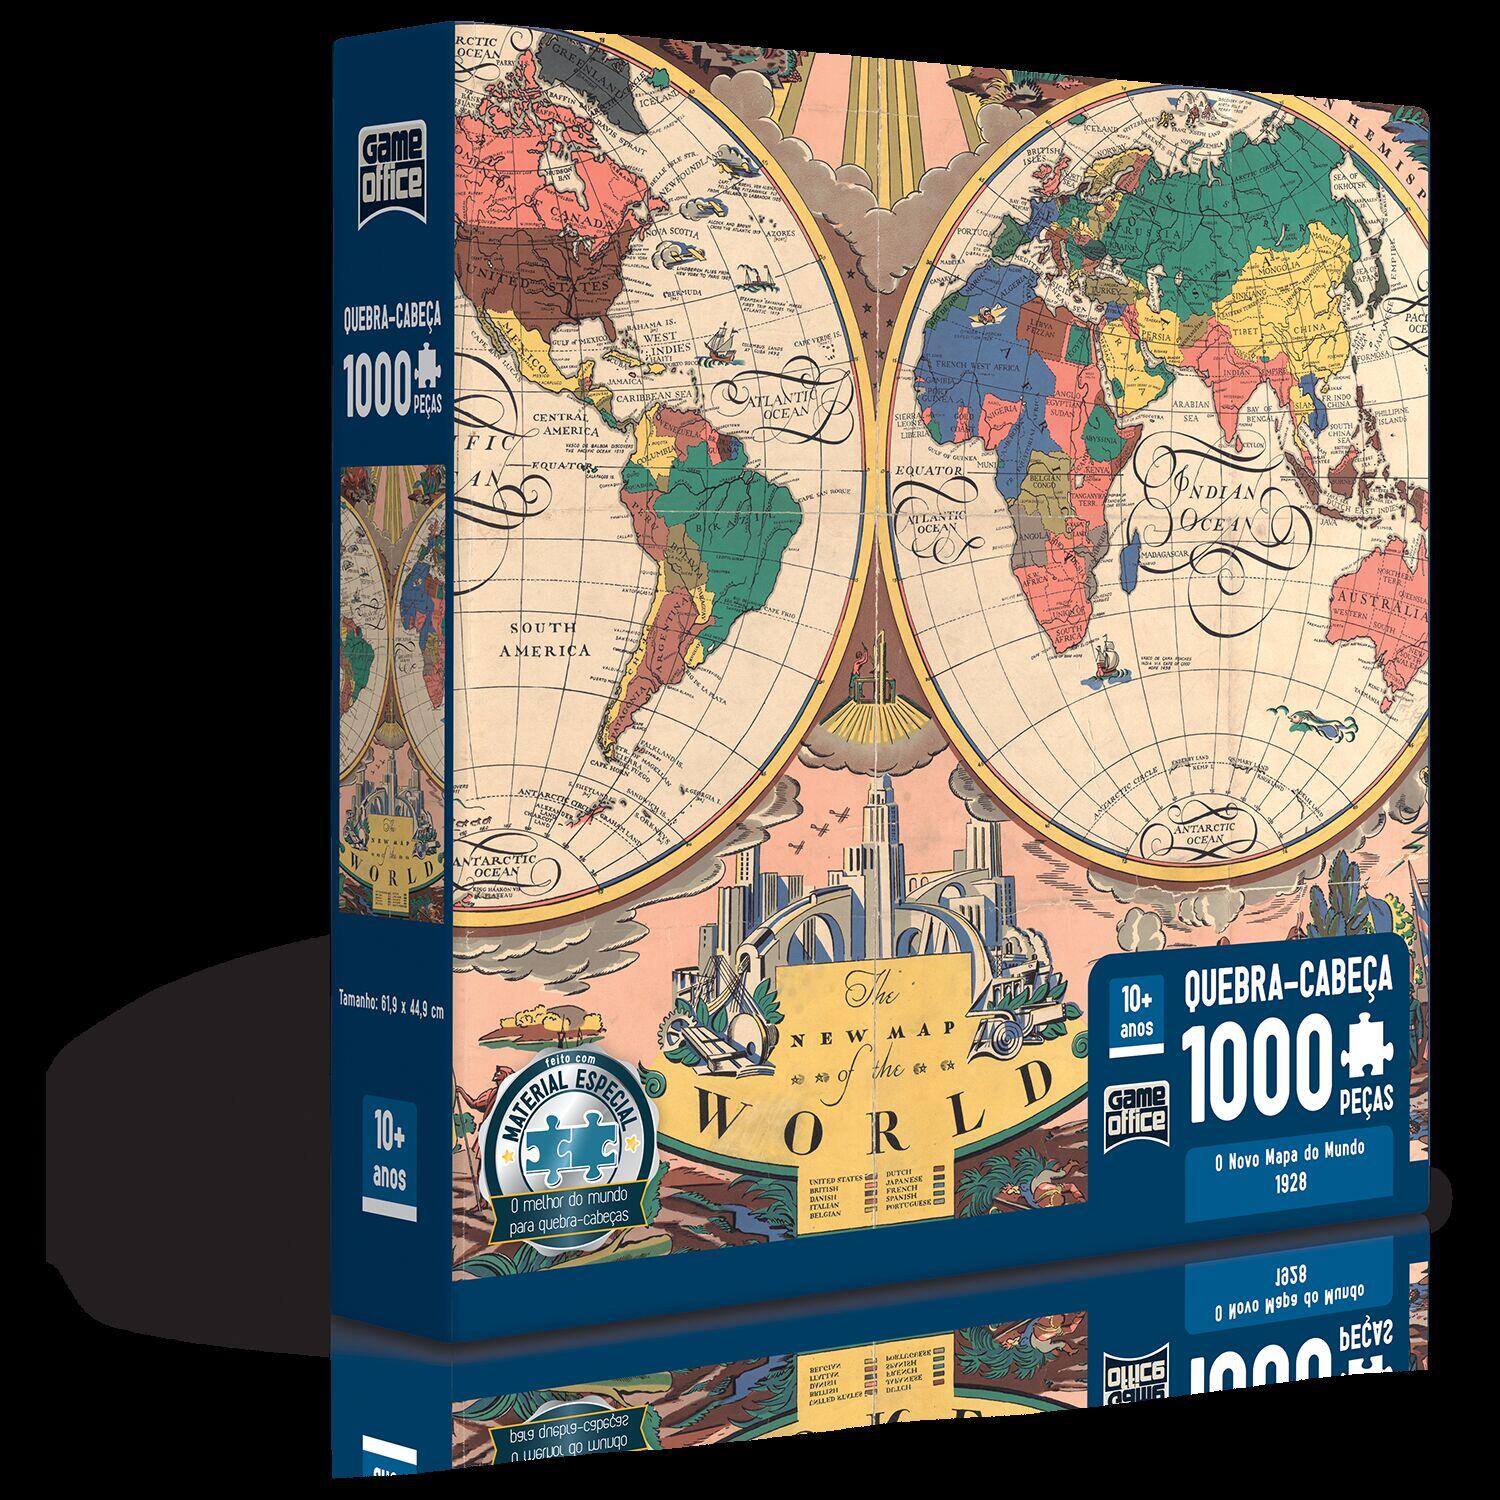 O Novo Mapa do Mundo: 1928 - Quebra-cabeça - 1000 peças